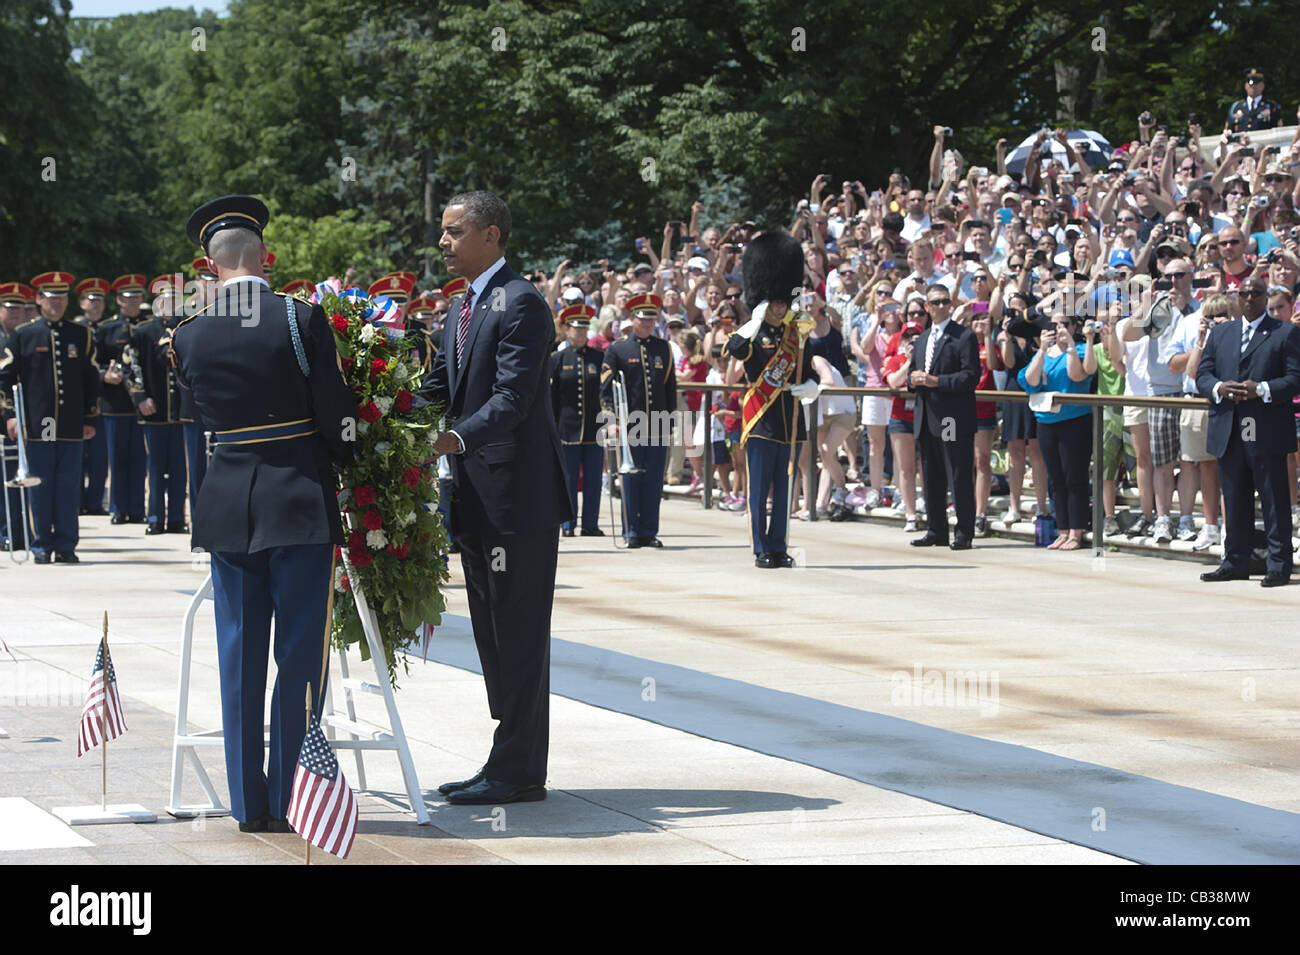 US-Präsident Barack Obama legt einen Kranz am Grab der unbekannten zu Ehren des Memorial Day auf dem Arlington National Cemetery 28. Mai 2012 in Arlington, VA Stockfoto